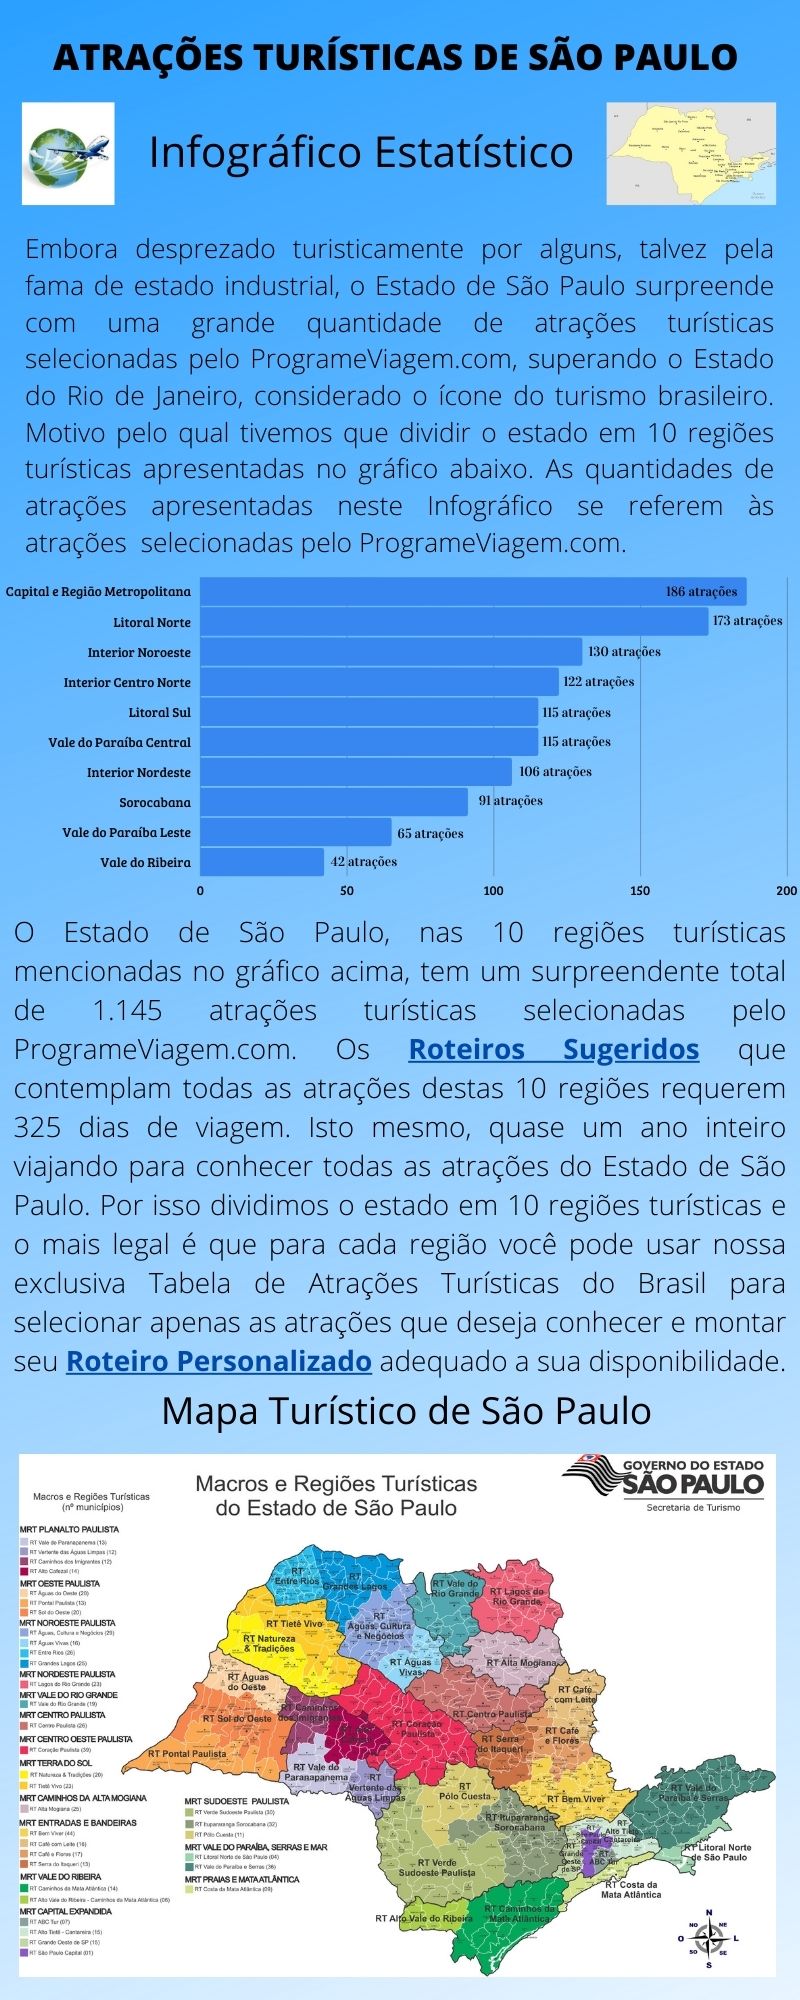 Infográfico Atrações Turísticas de São Paulo